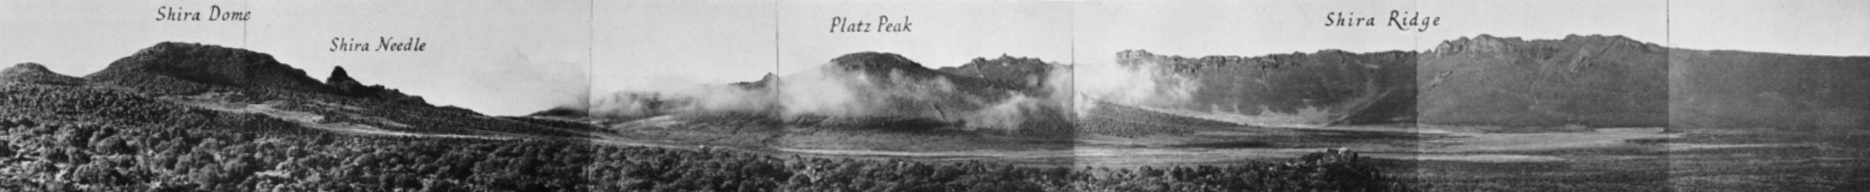 Das Shira Platau 1948.Mit dem zentralem Platzkegel - hier als Platz Peak bezeichnet. Ein Panoramabild aus Einzelaufnahmen von Georg Salt aus dem jahr 1948. [6]